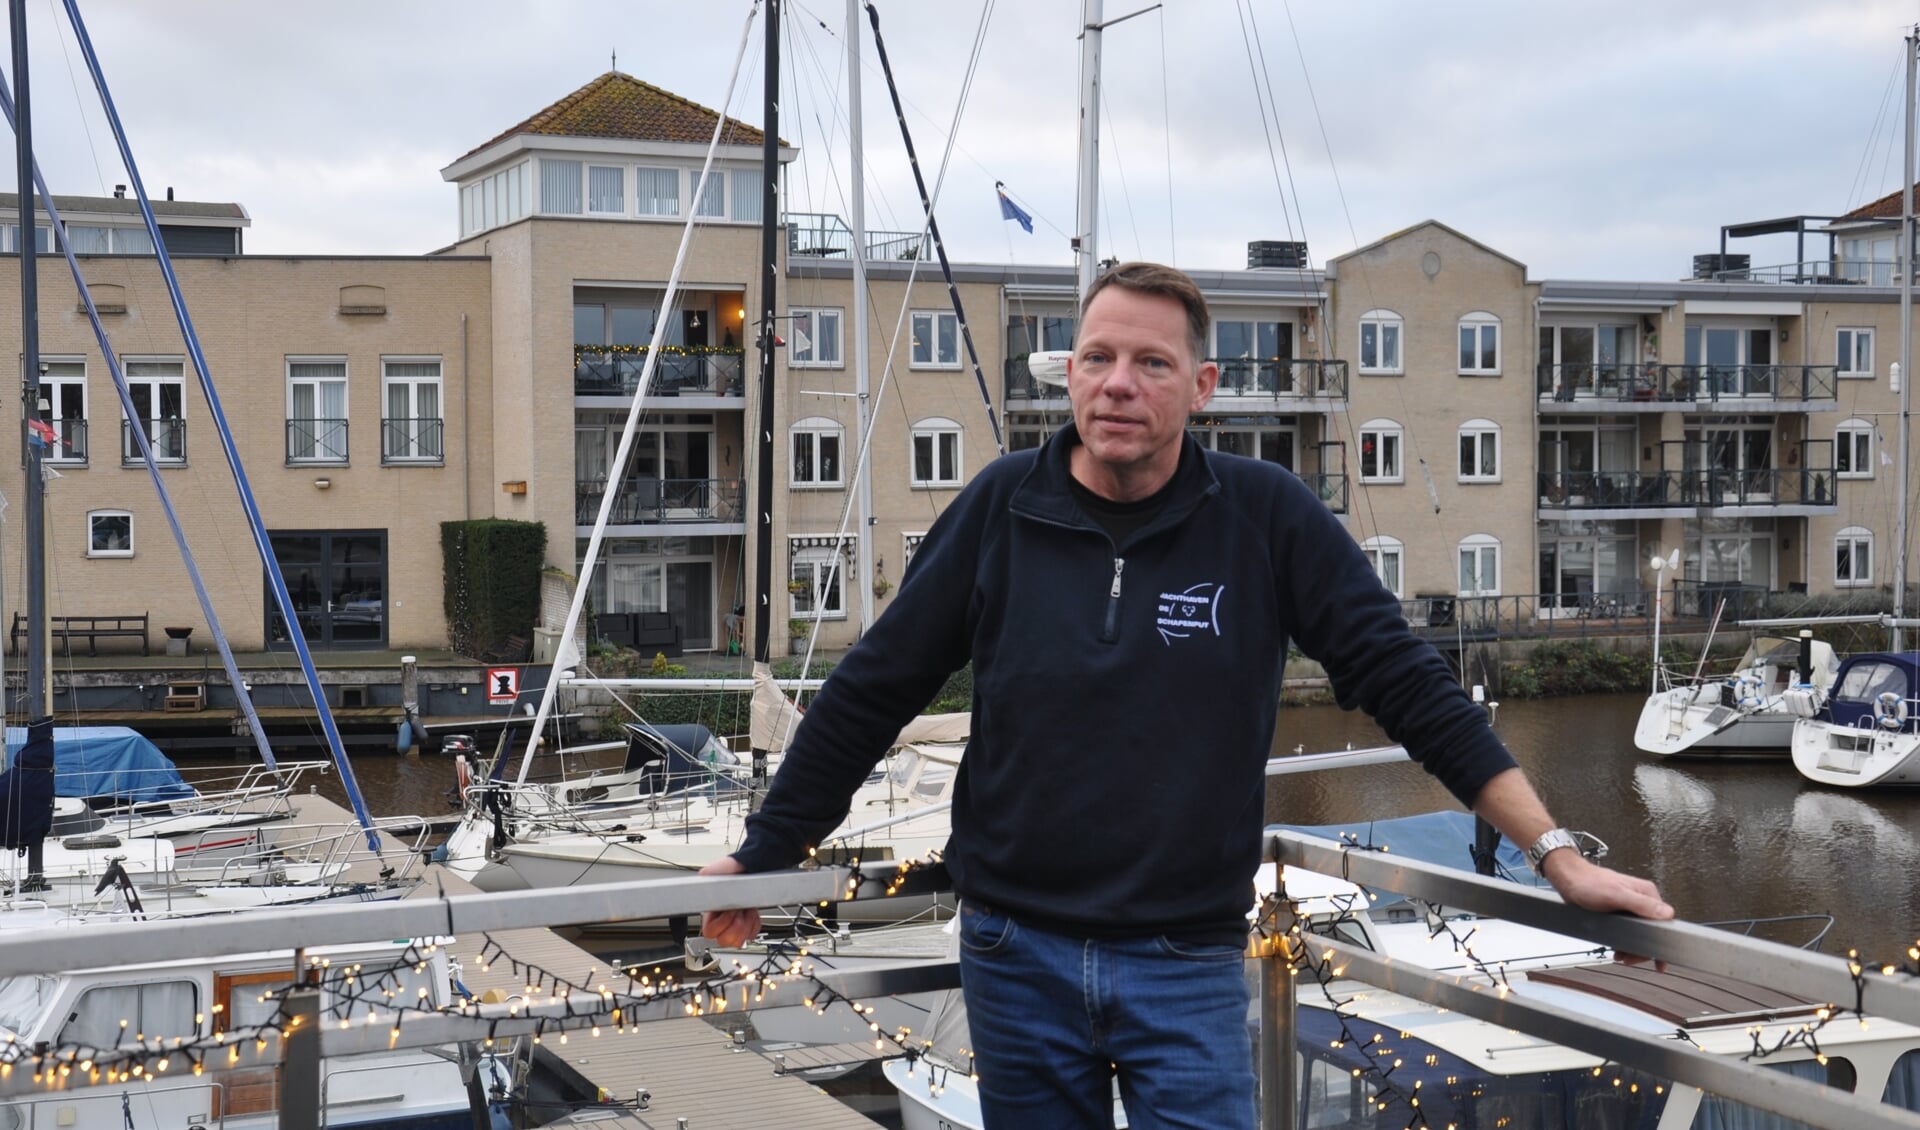 Havenmeester Dirk-Jan van Wezel: ‘De binnenstad van Steenbergen heeft voldoende aanbod voor passanten en toeristen’ 